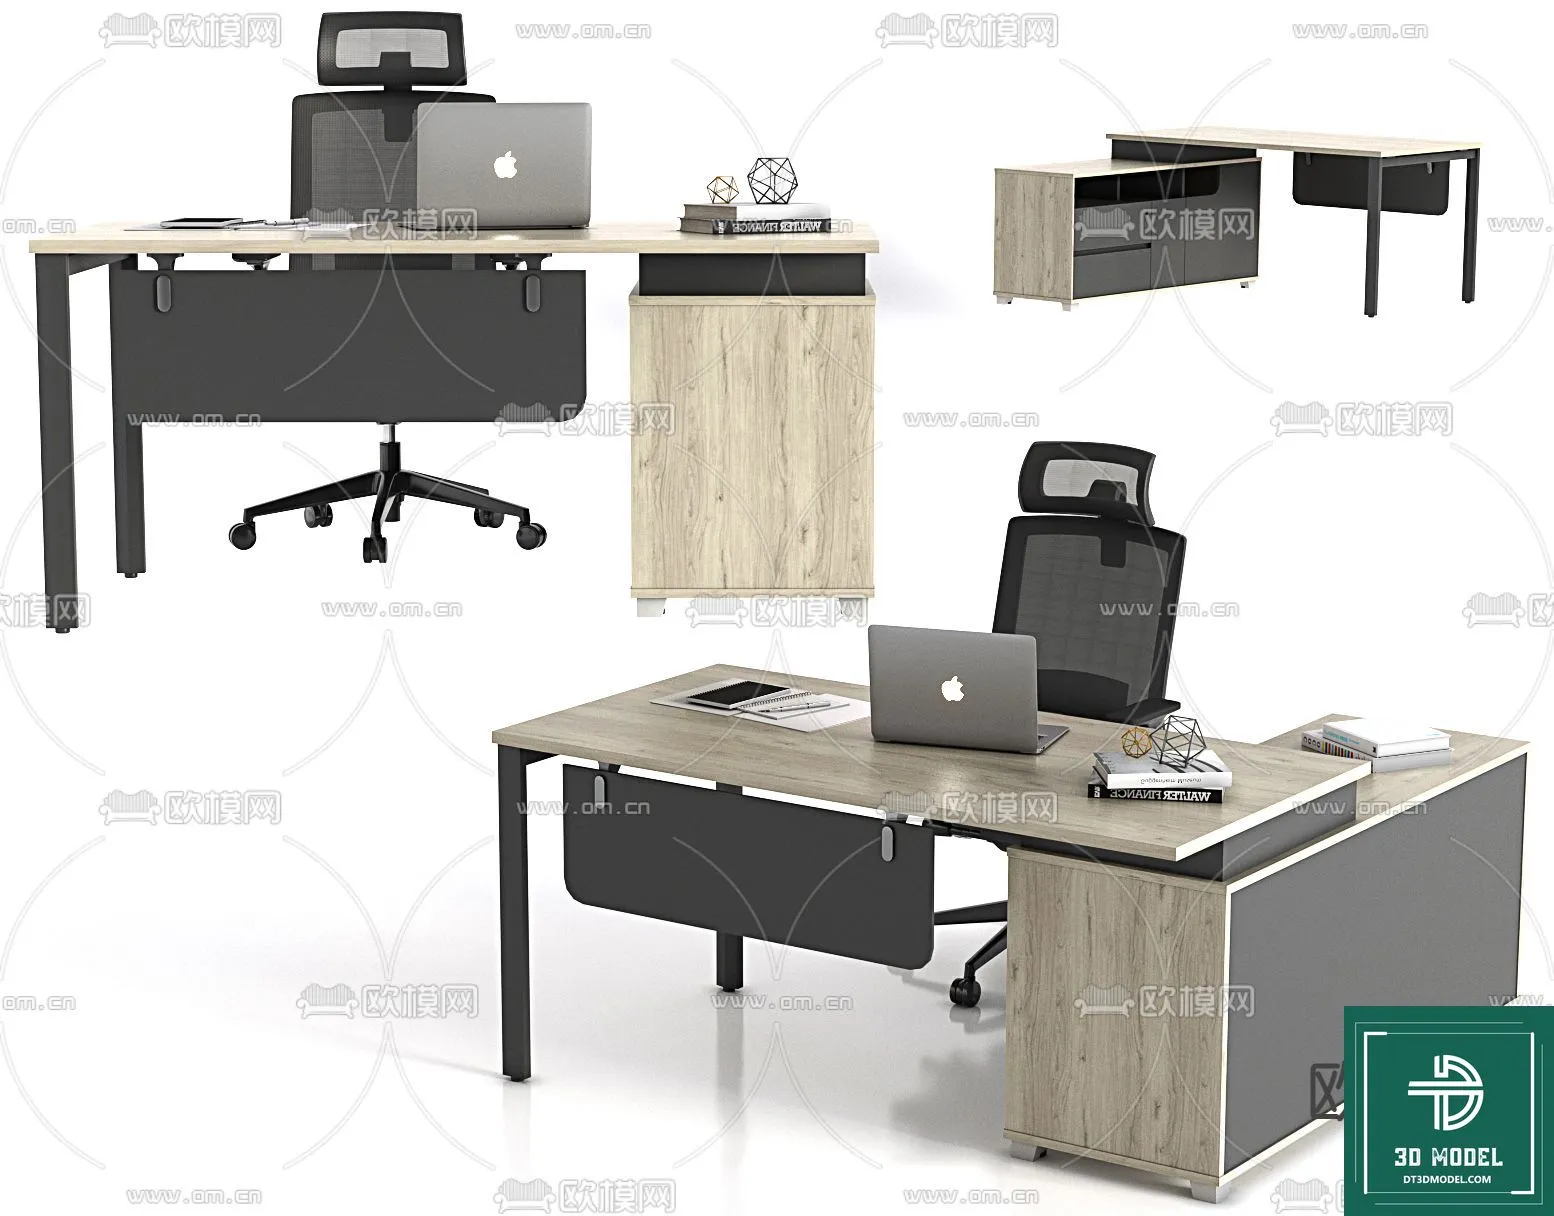 OFFICE TABLES – DESK 3DMODELS – 012